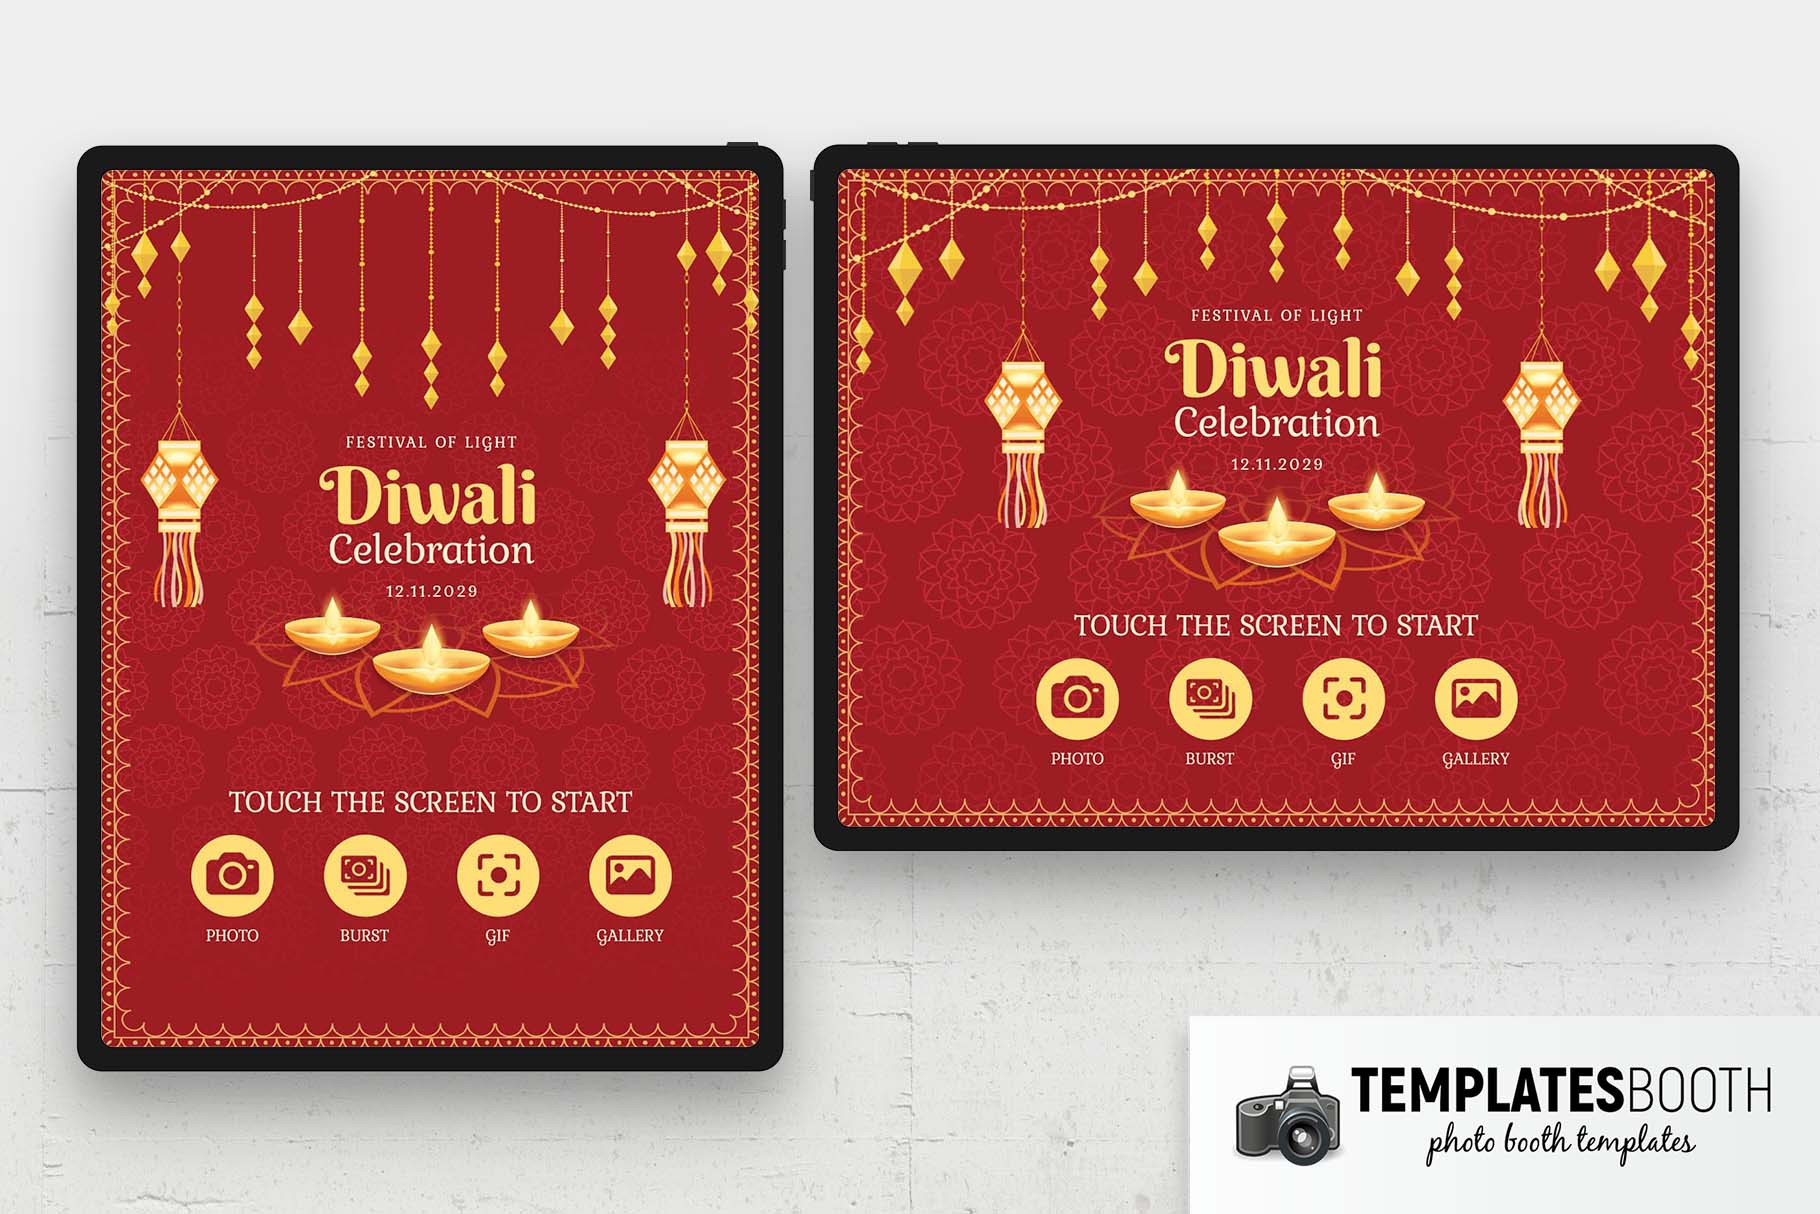 Écran de bienvenue pour le festival Diwali Photo Booth